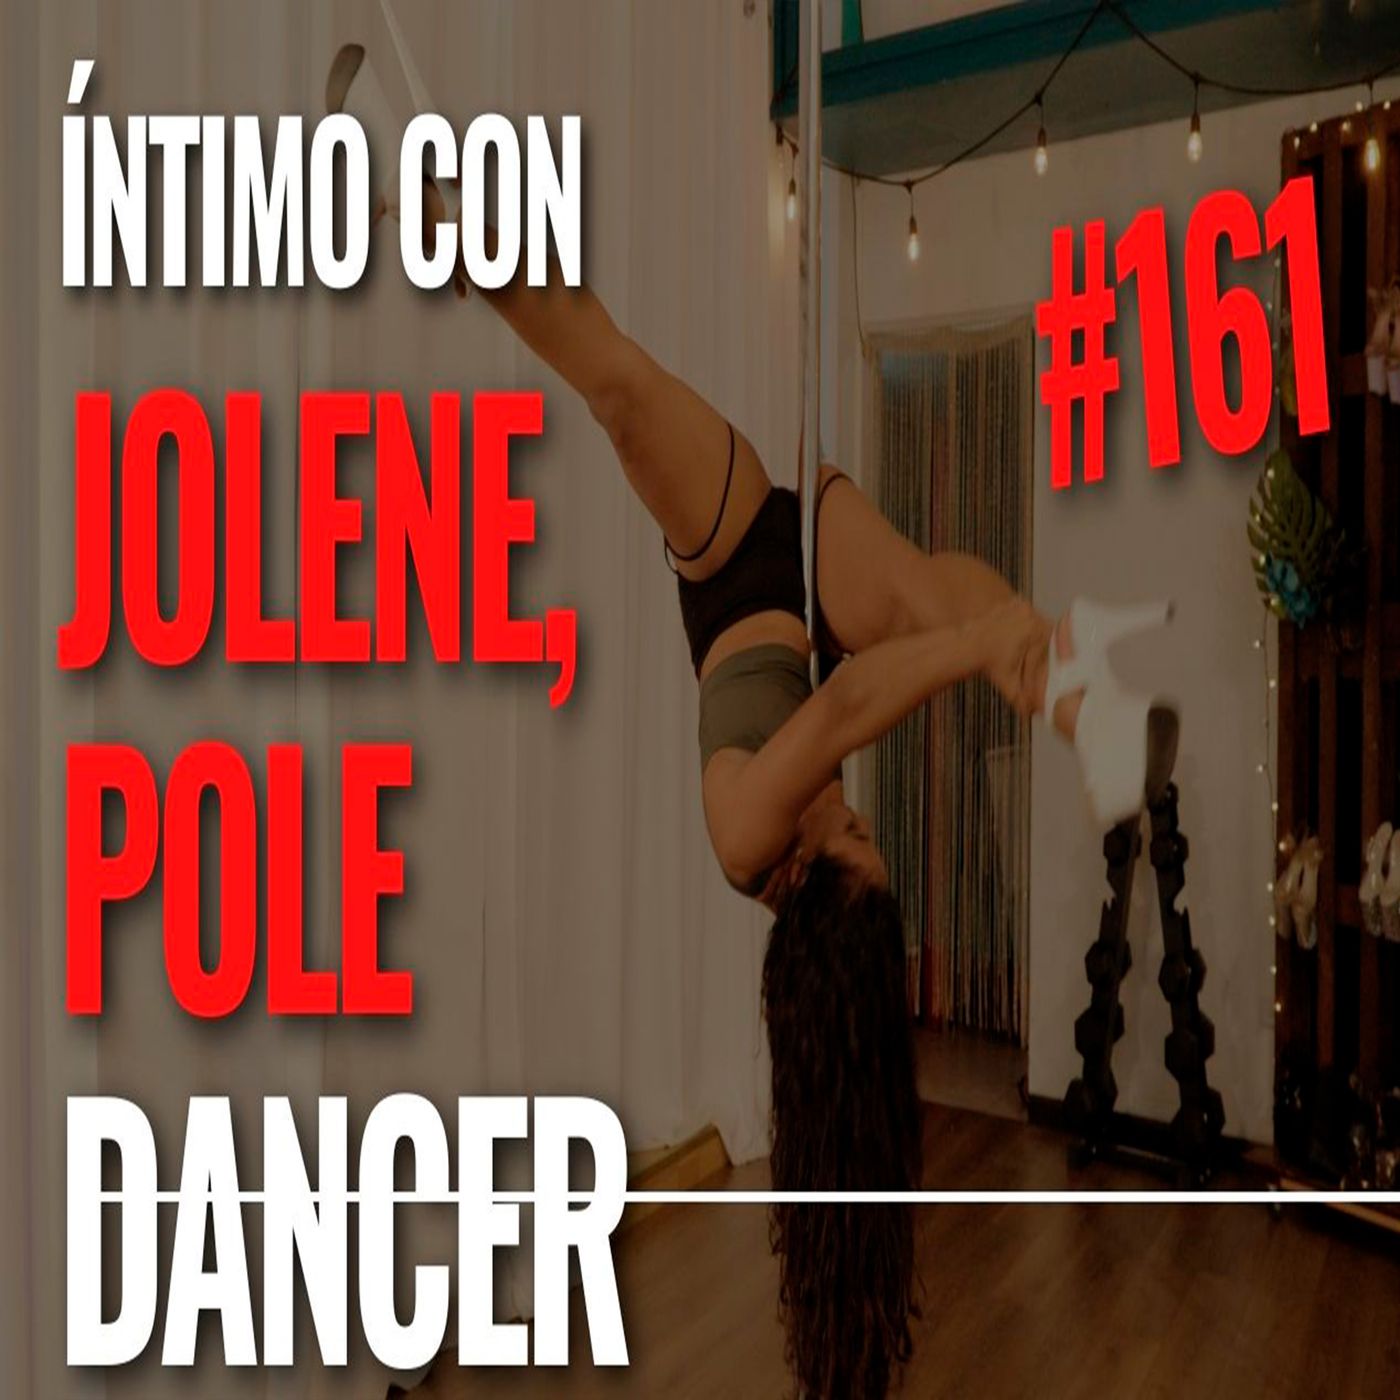 El Pole dancer  cambio mi vida Íntimo Epi #161